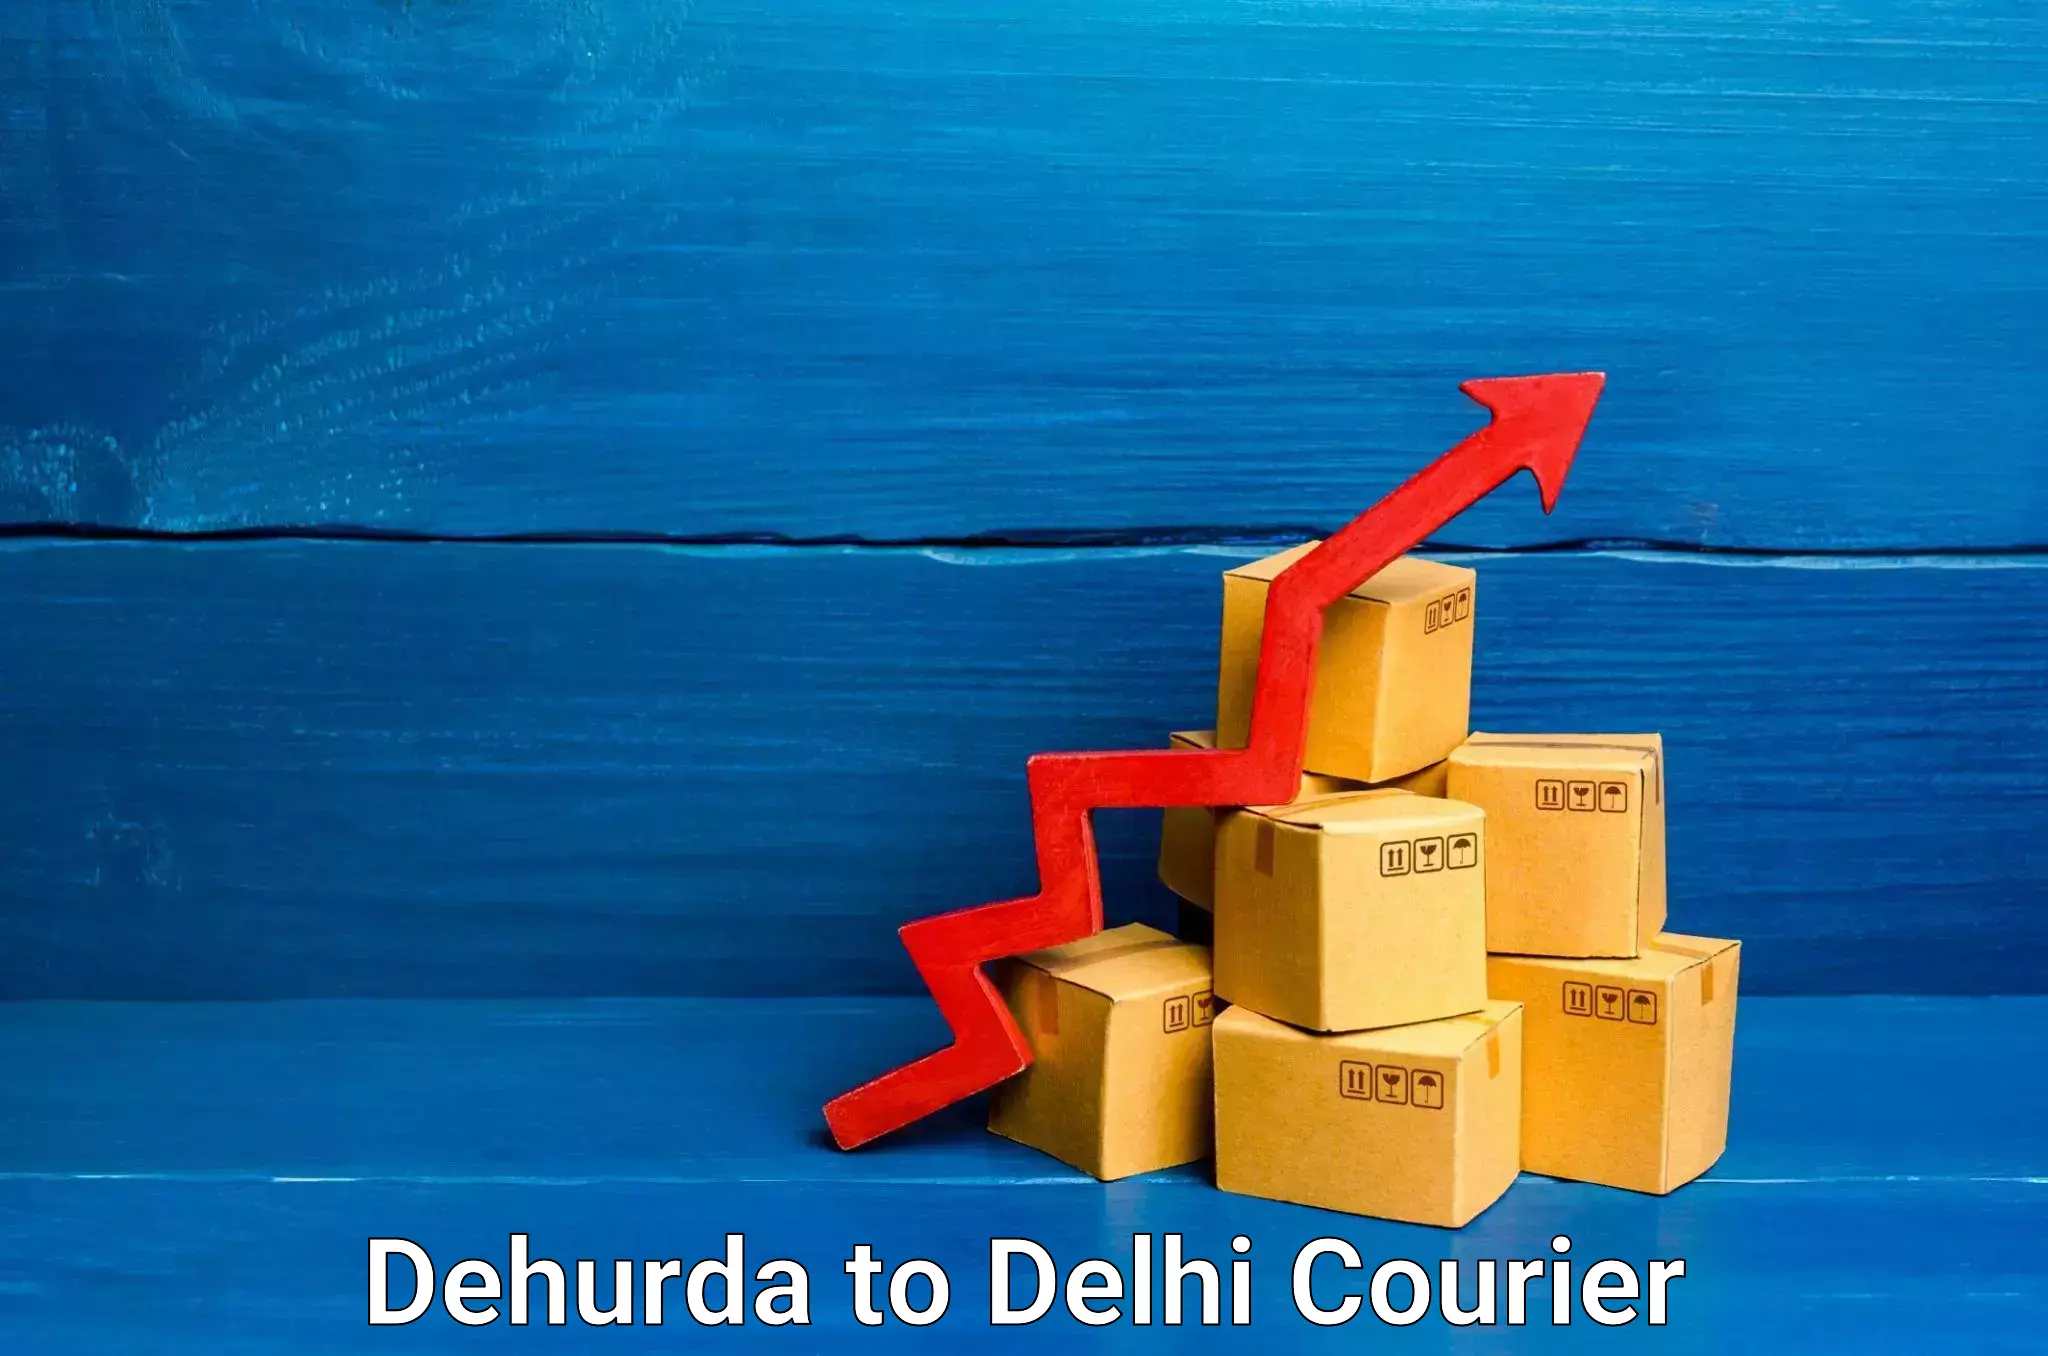 Tailored freight services Dehurda to IIT Delhi